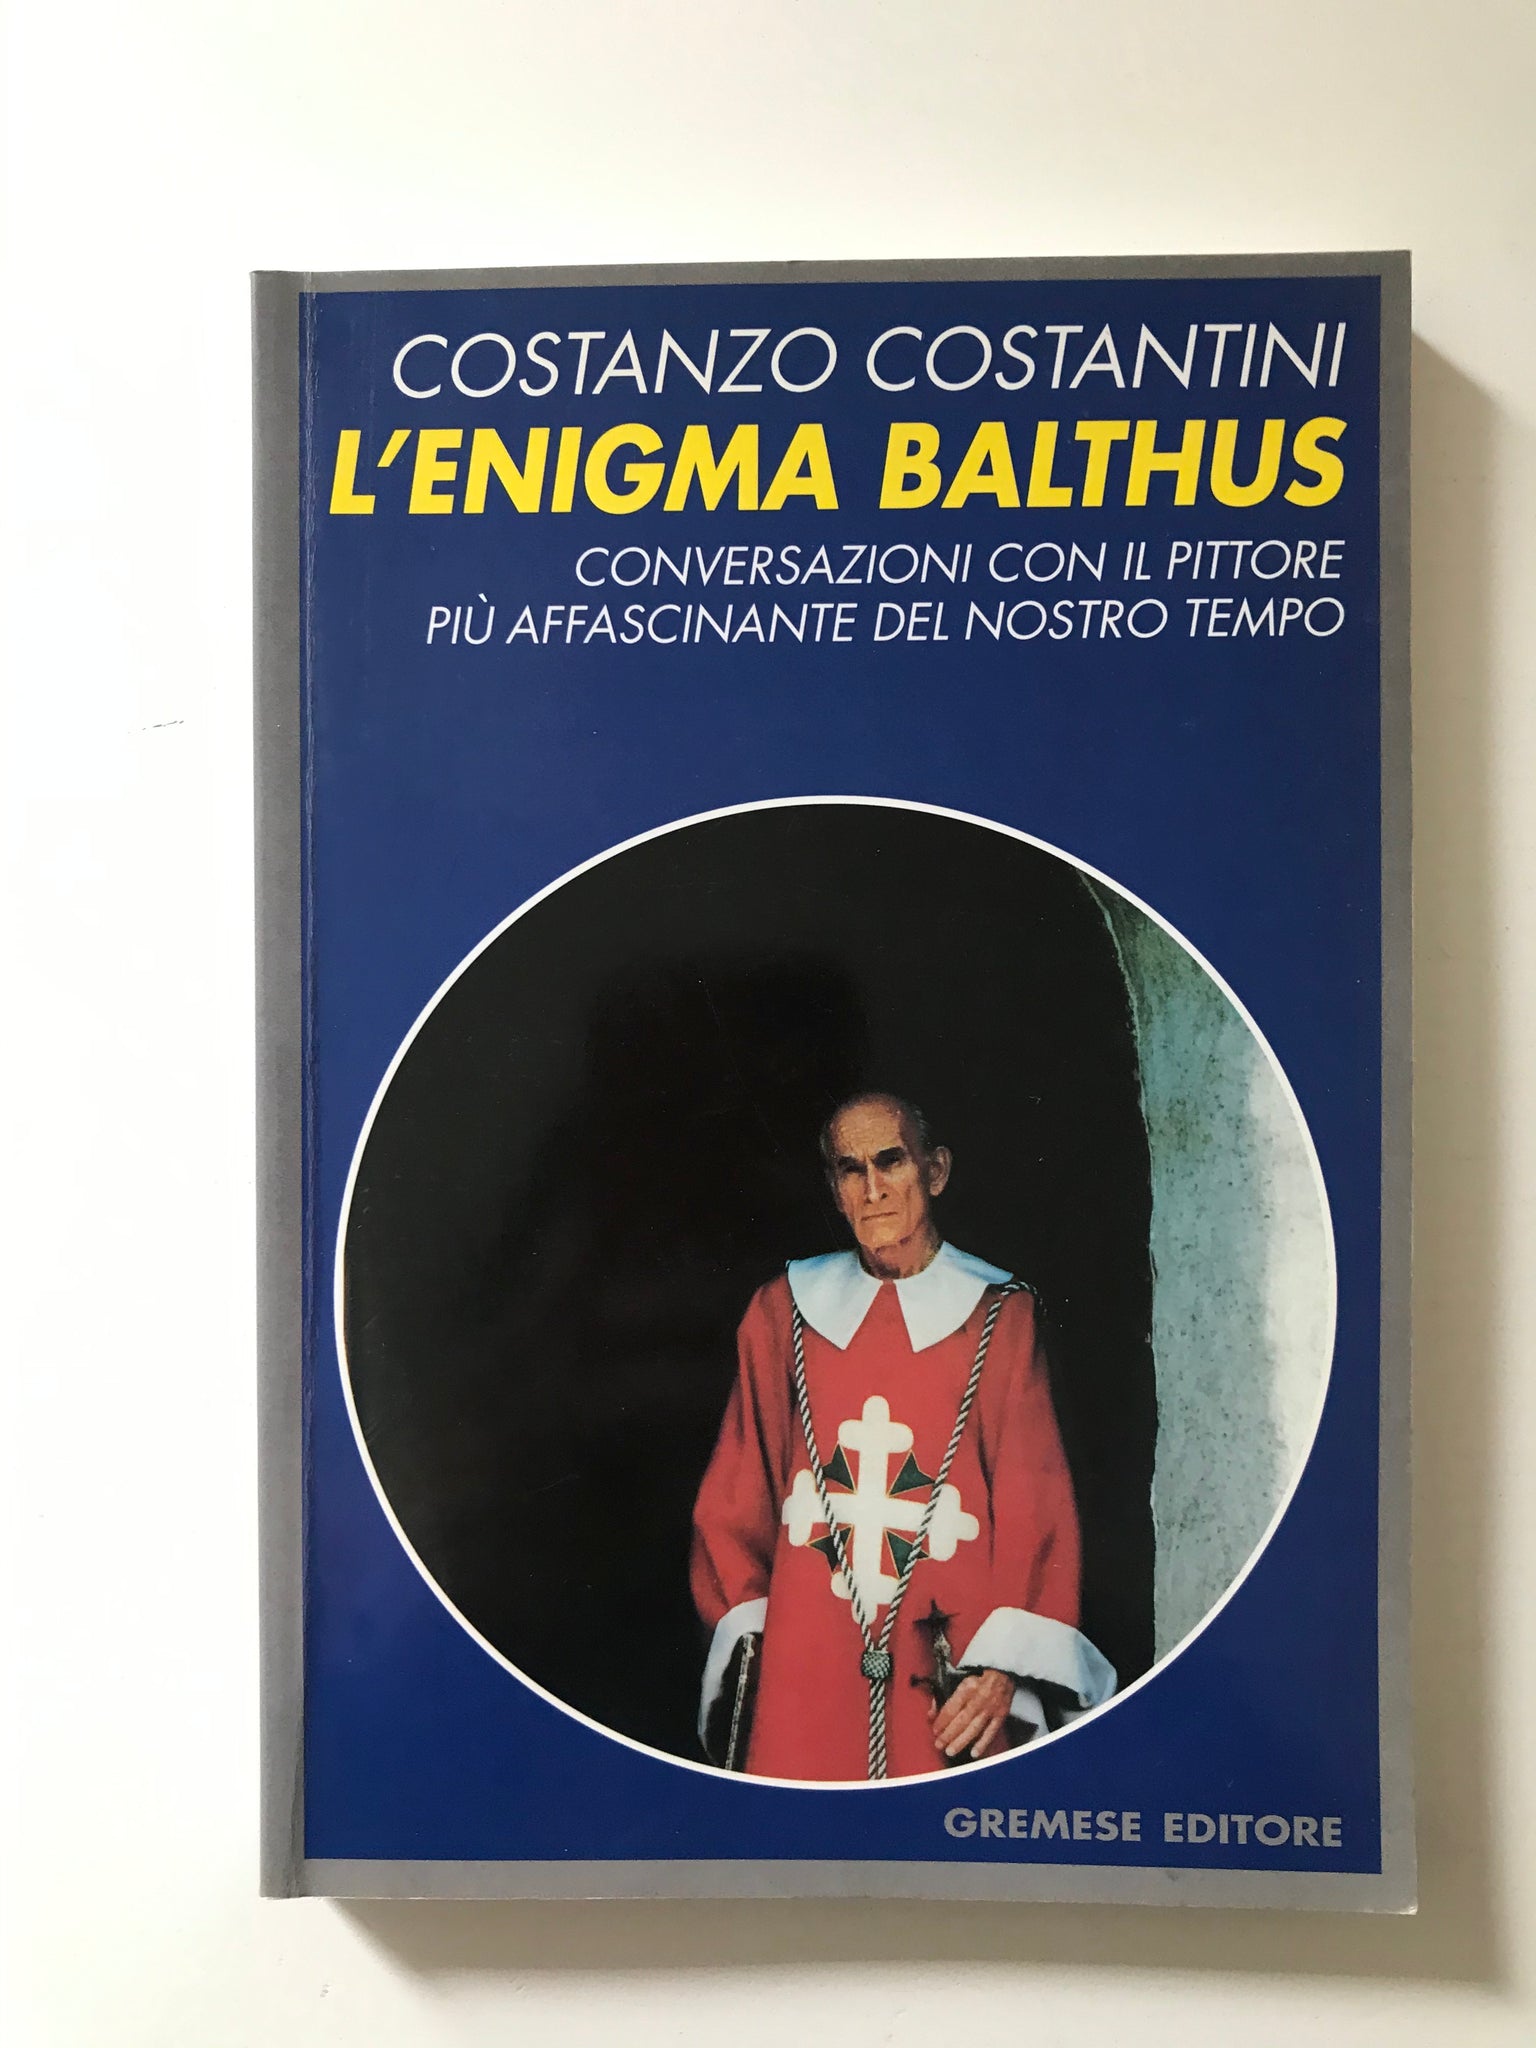 Costanzo Costantini - L'enigma Balthus conversazioni con il pittore più affascinante del nostro tempo